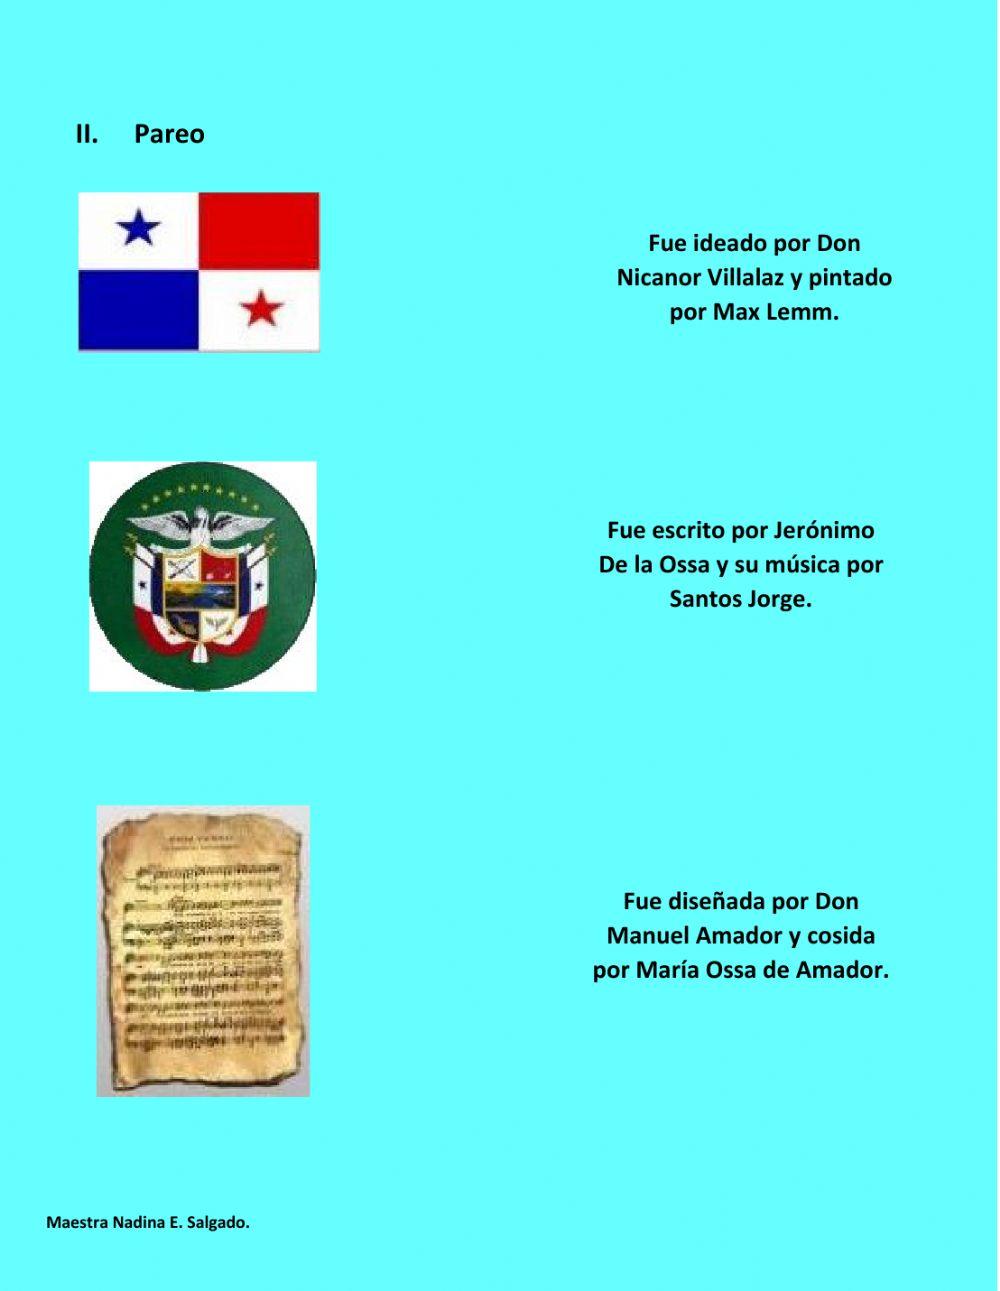 Símbolos patrios de Panamá